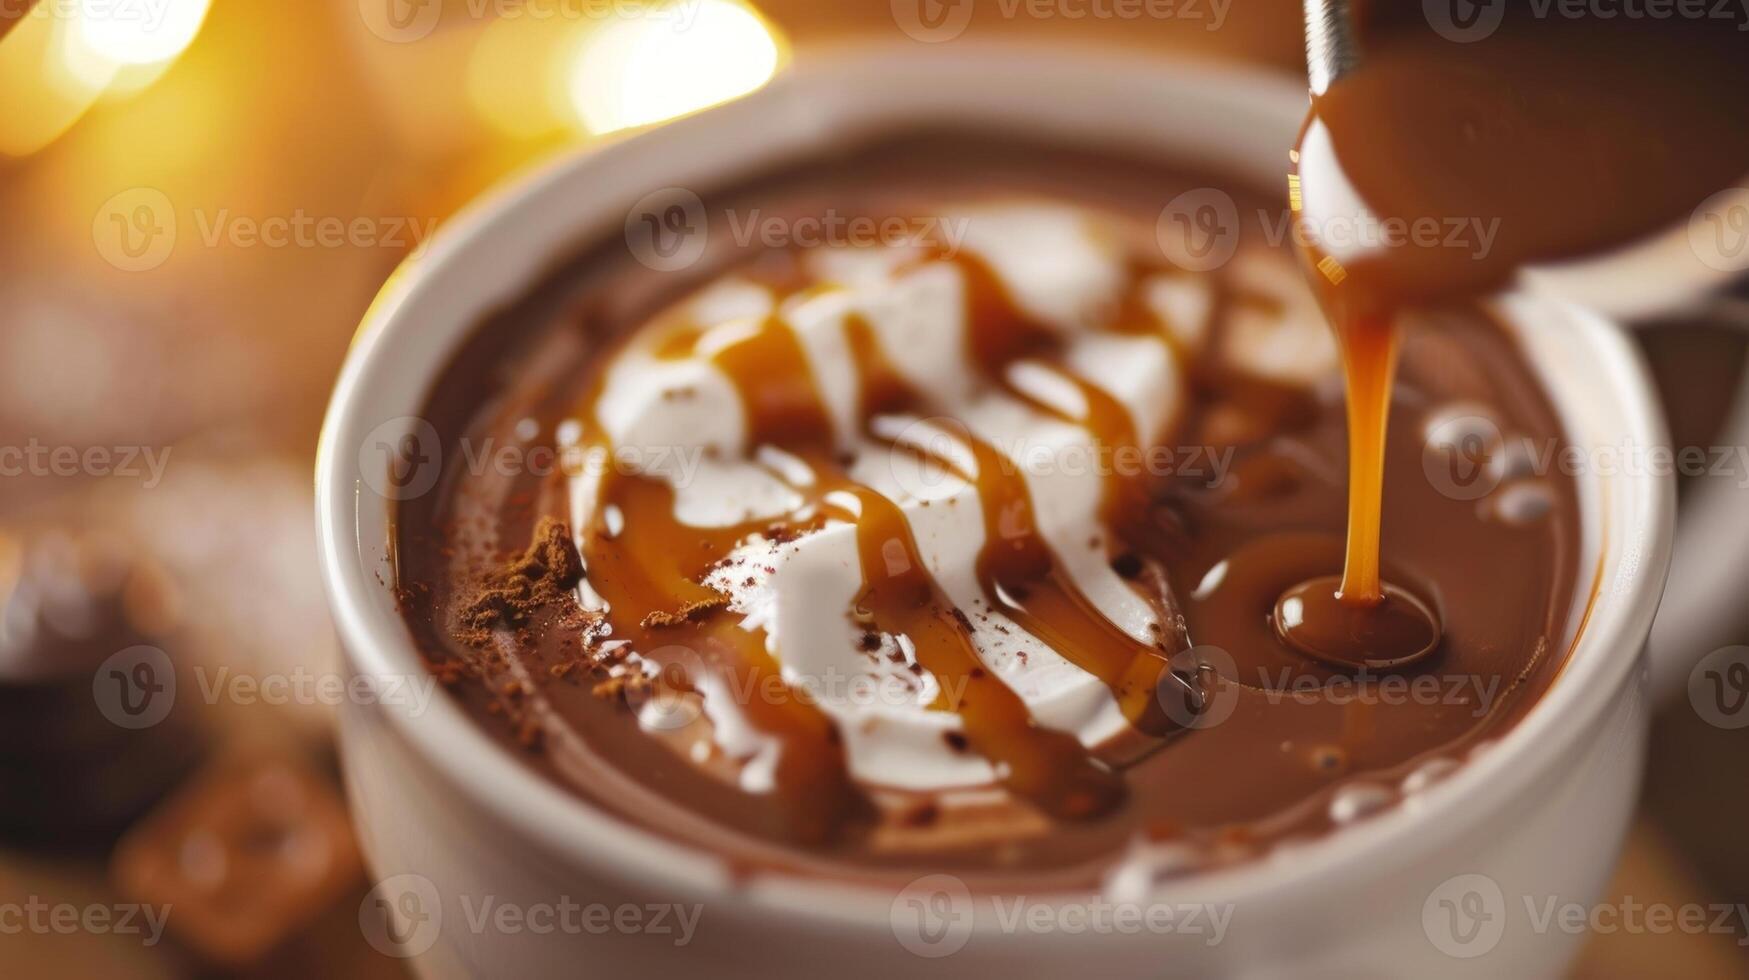 un caramelo llovizna cascada abajo el lado de un clásico caliente chocolate agregando un toque de dulzura a el Rico cacao sabor foto